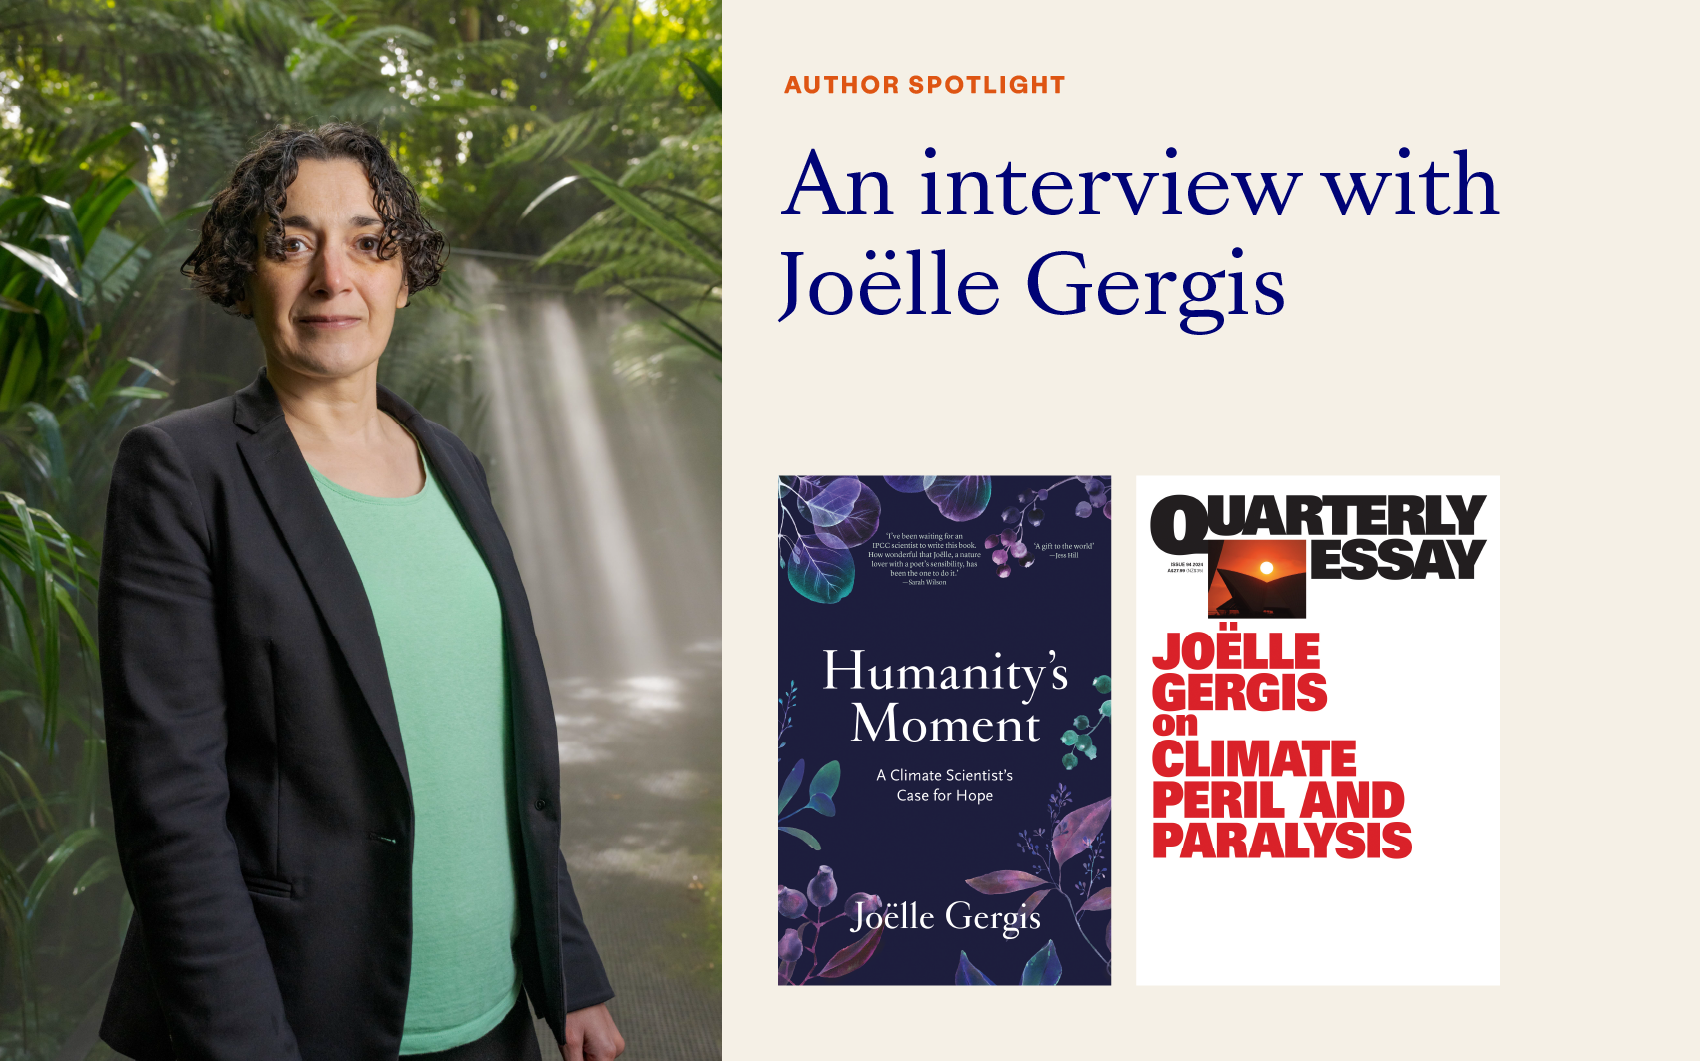 Author Spotlight on Joëlle Gergis